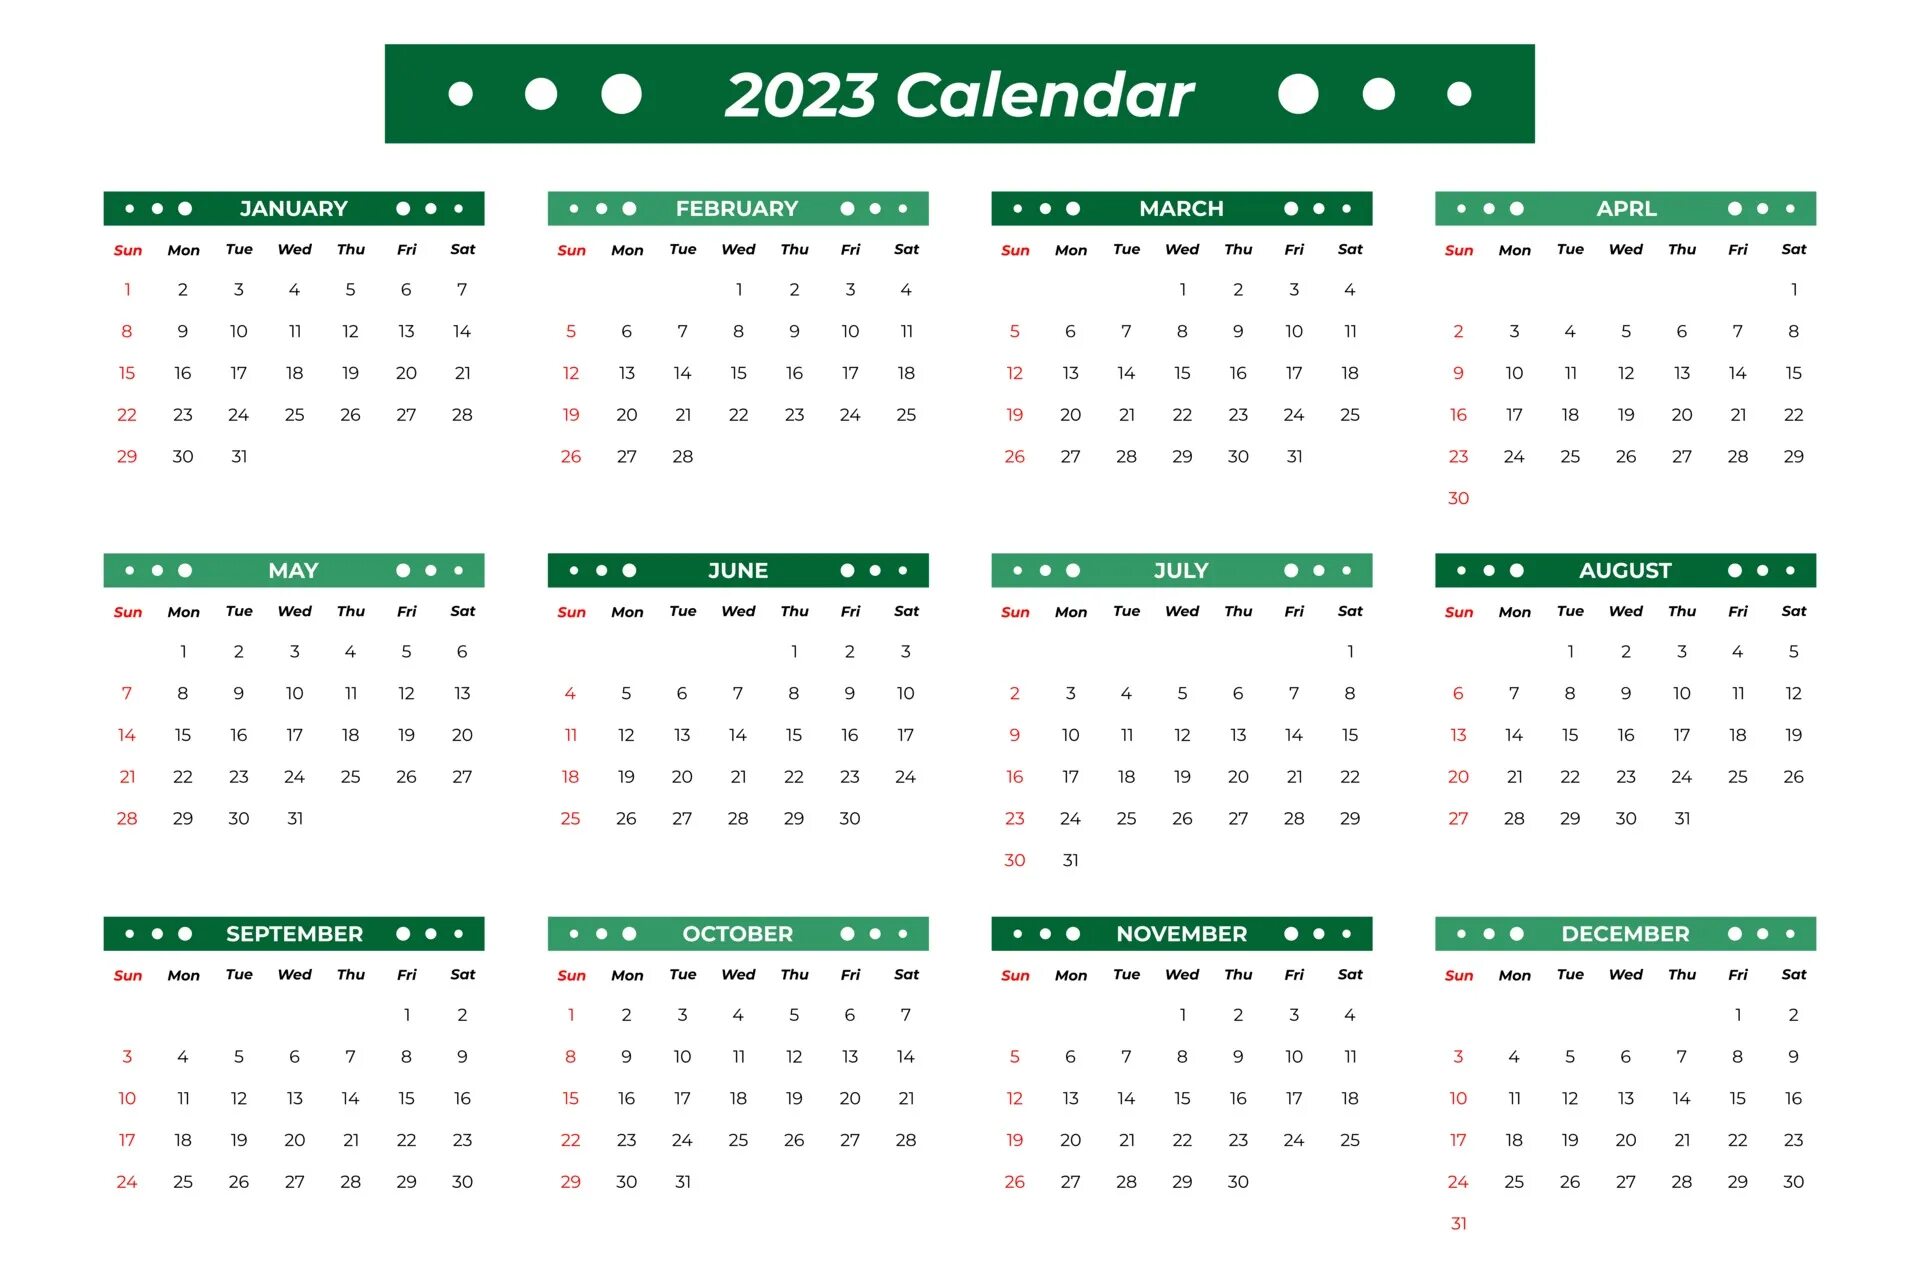 Даты календаря на 2023 год. Сетка календаря 2023 вектор. Календарь 2023 в хорошем качестве. Макет календаря на 2023 год. Шаблон календаря на 2023 год.